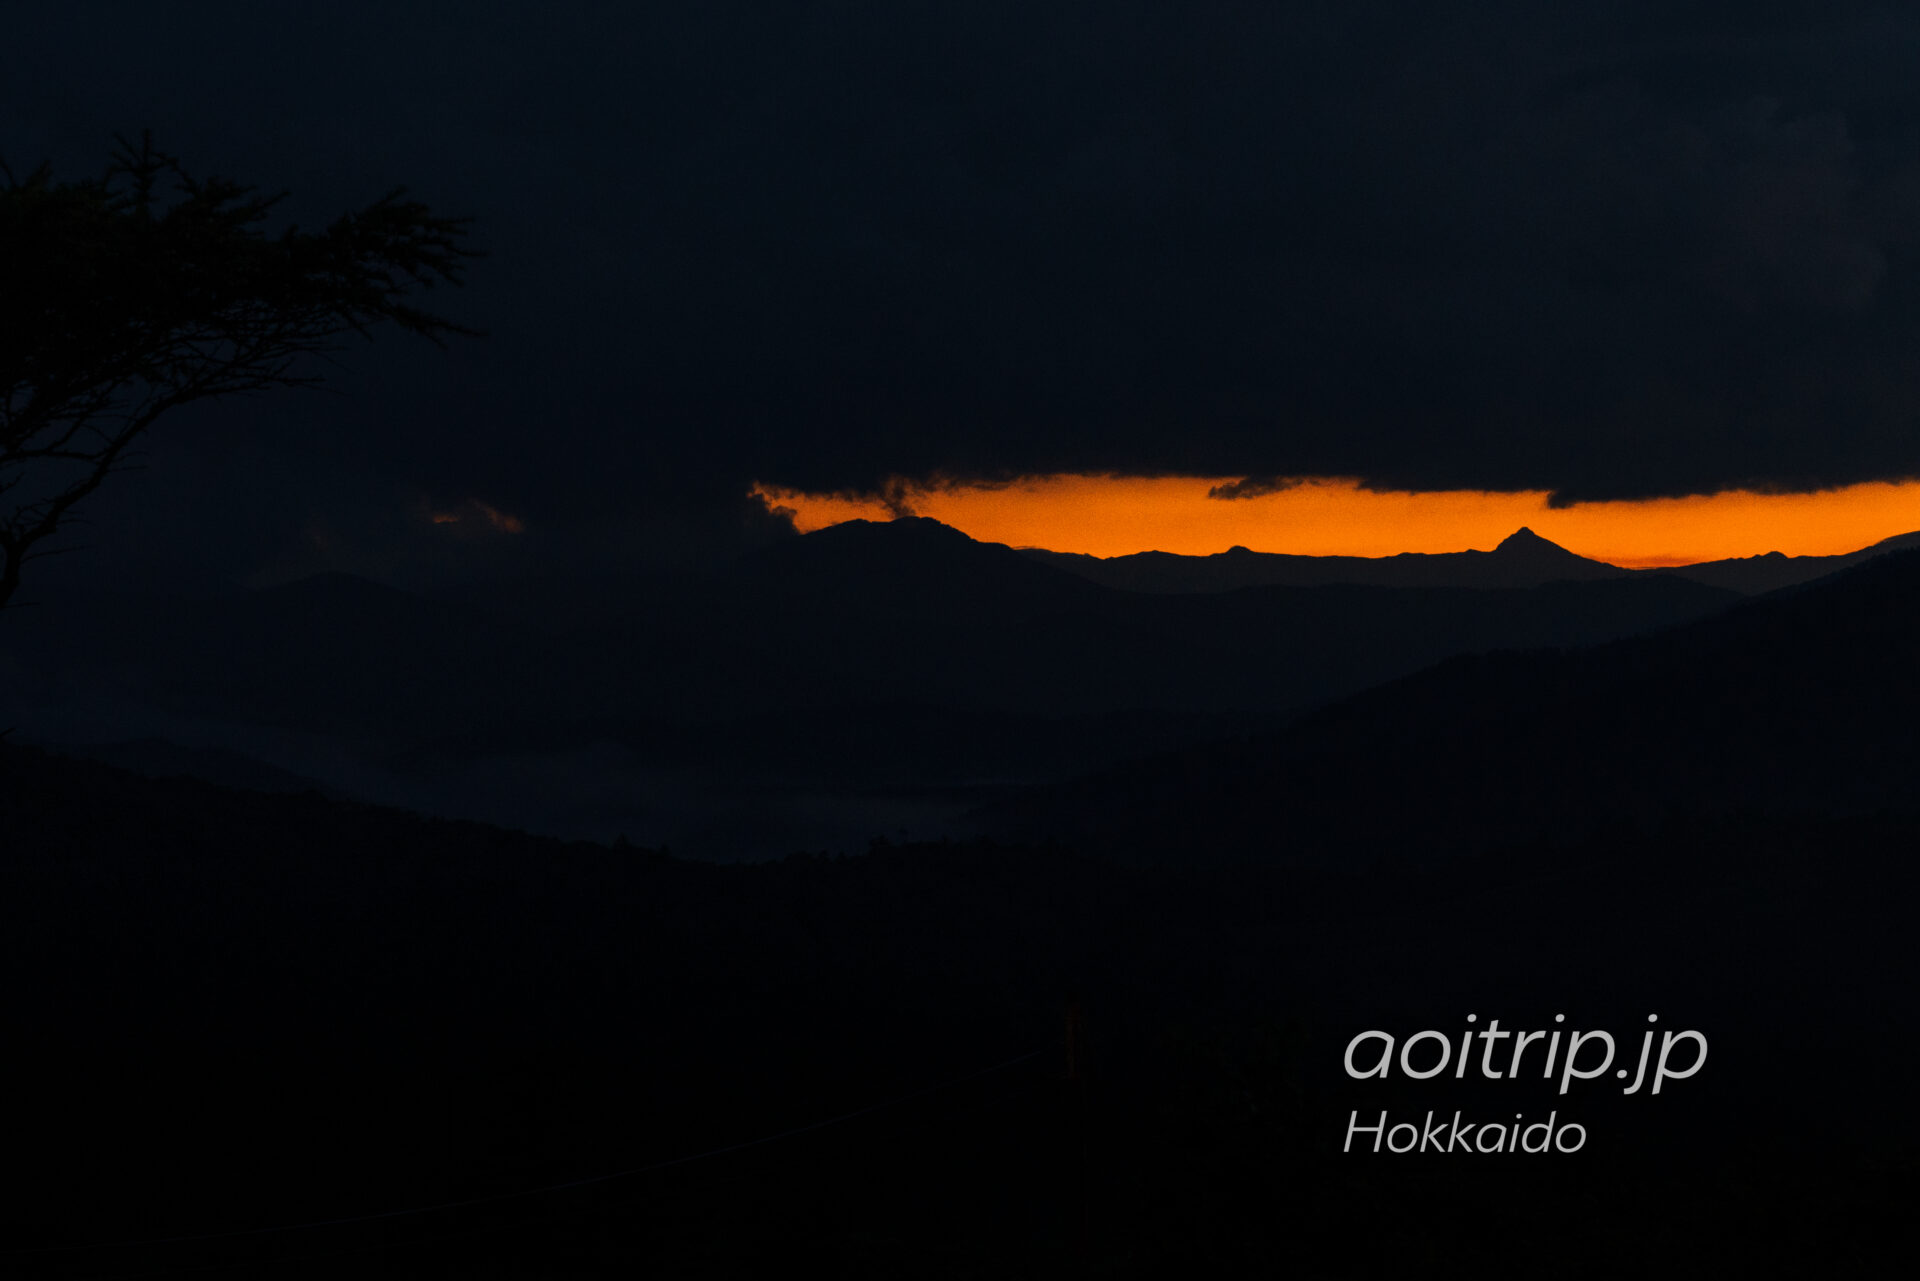 北海道の狩勝峠から望む夕張岳とマジックアワーの夕焼け